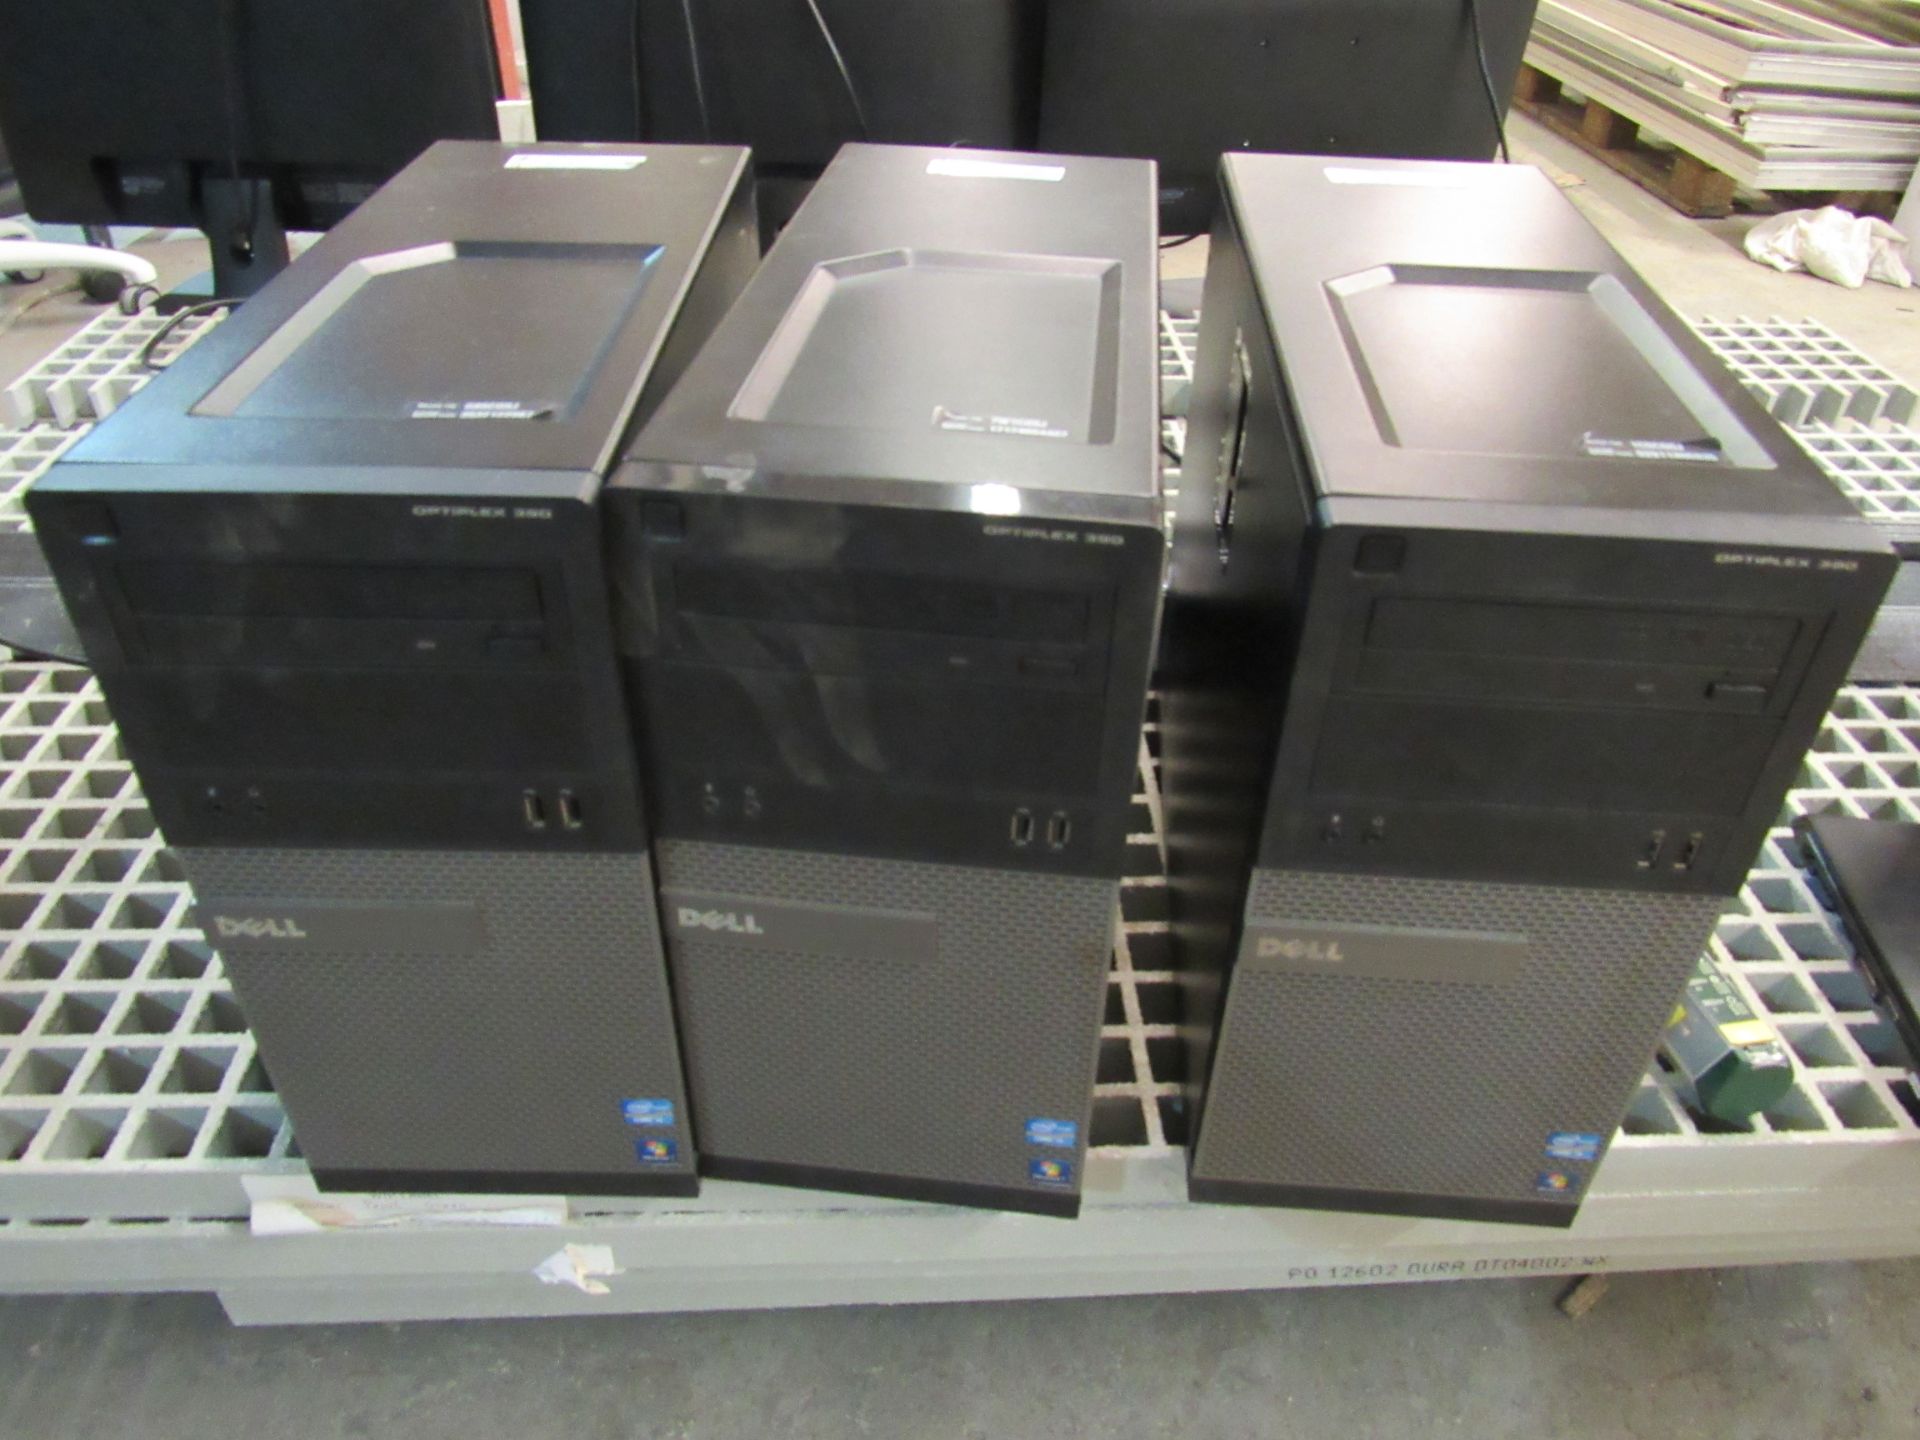 3 Dell Optiplex 390 Intel i5 PCs, PROCESSOR, I5-2400, 3.1, 4C, SNB, D2, L, No HDDs, This lot is